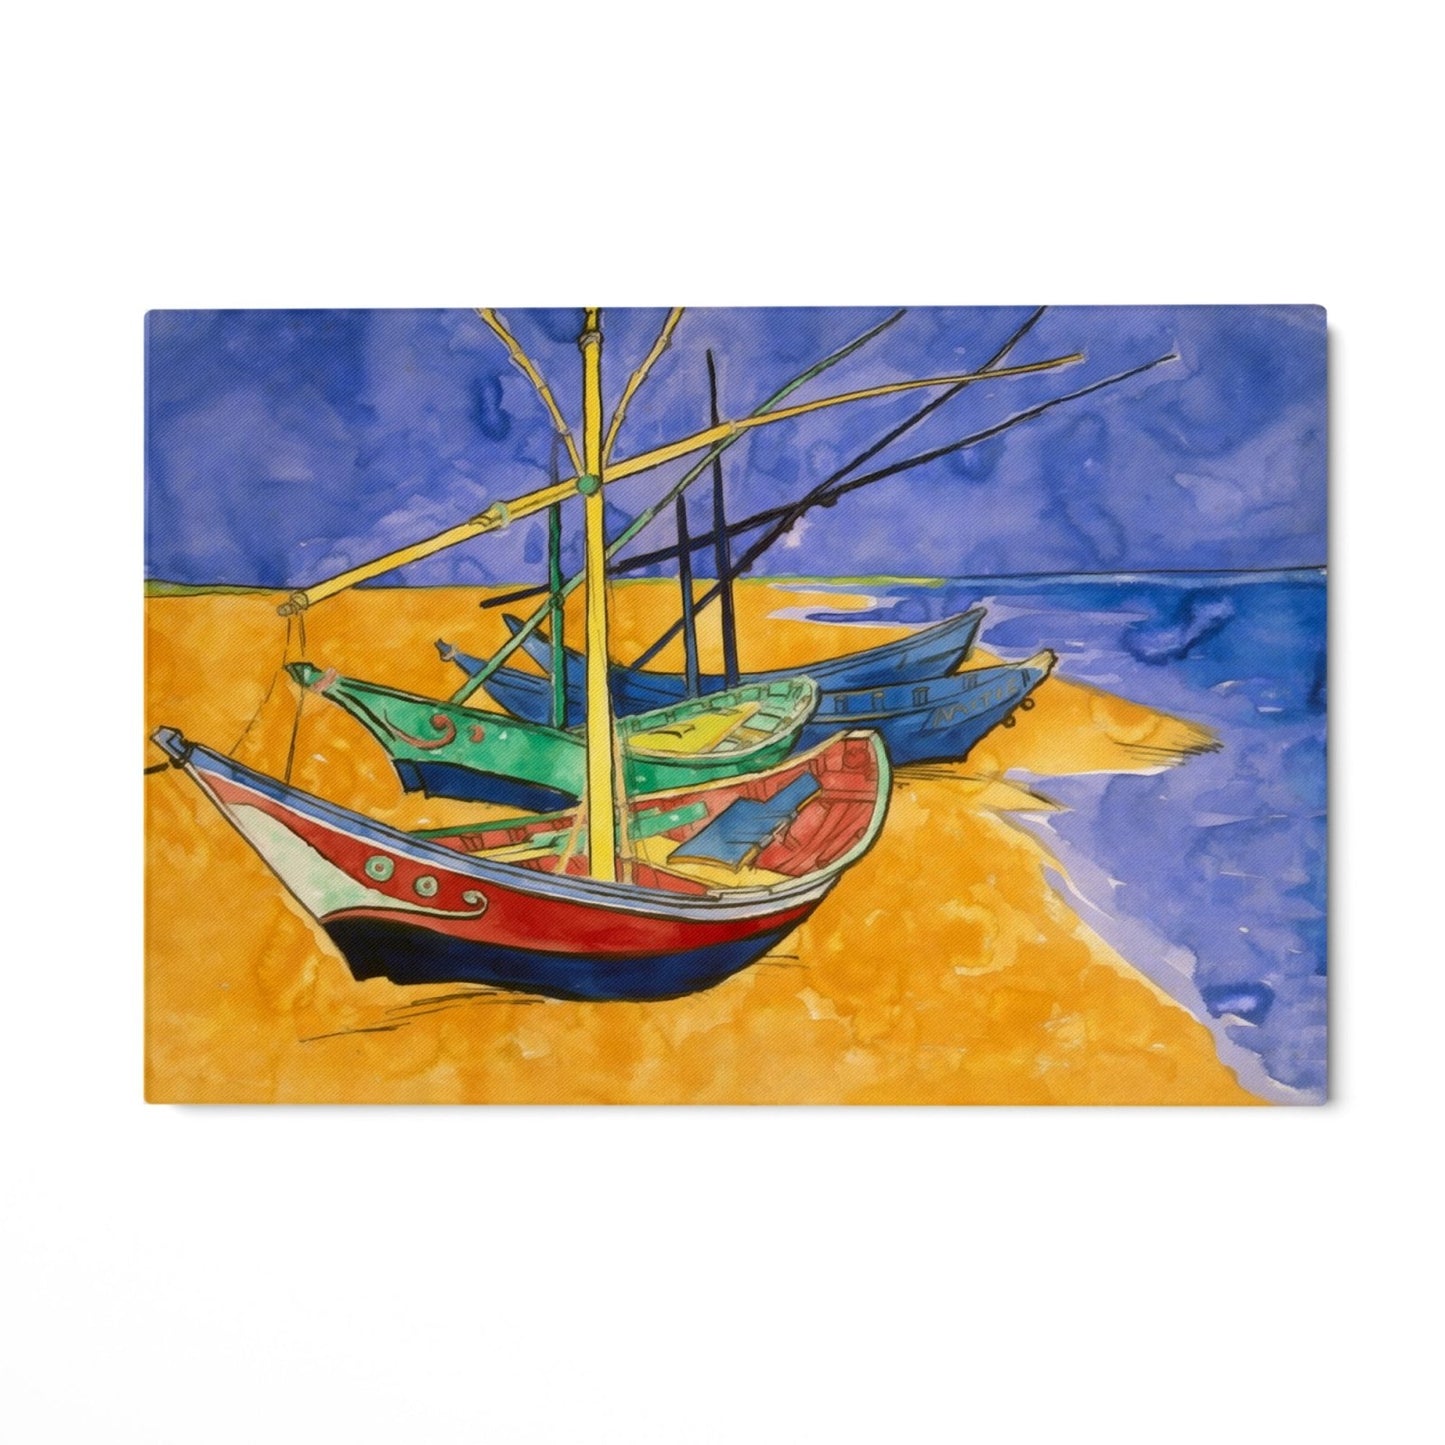 Barcos de pesca en la playa I, Vincent Van Gogh